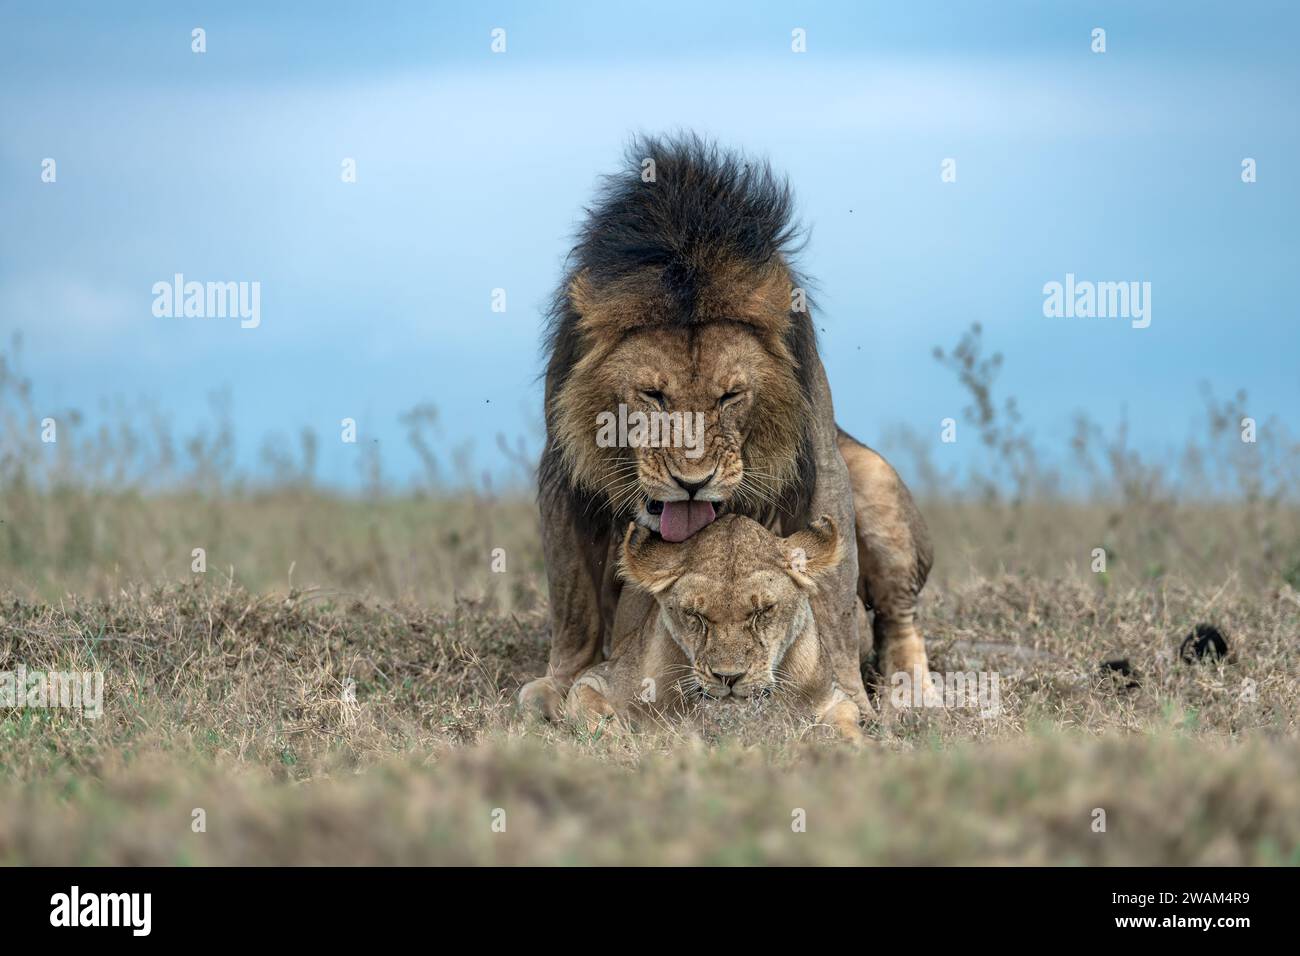 Eine Frontalansicht eines Paarungspaares von Löwen bei der Paarung mit dem männlichen auf dem Weibchen im Serengeti-Nationalpark, Tansania Stockfoto